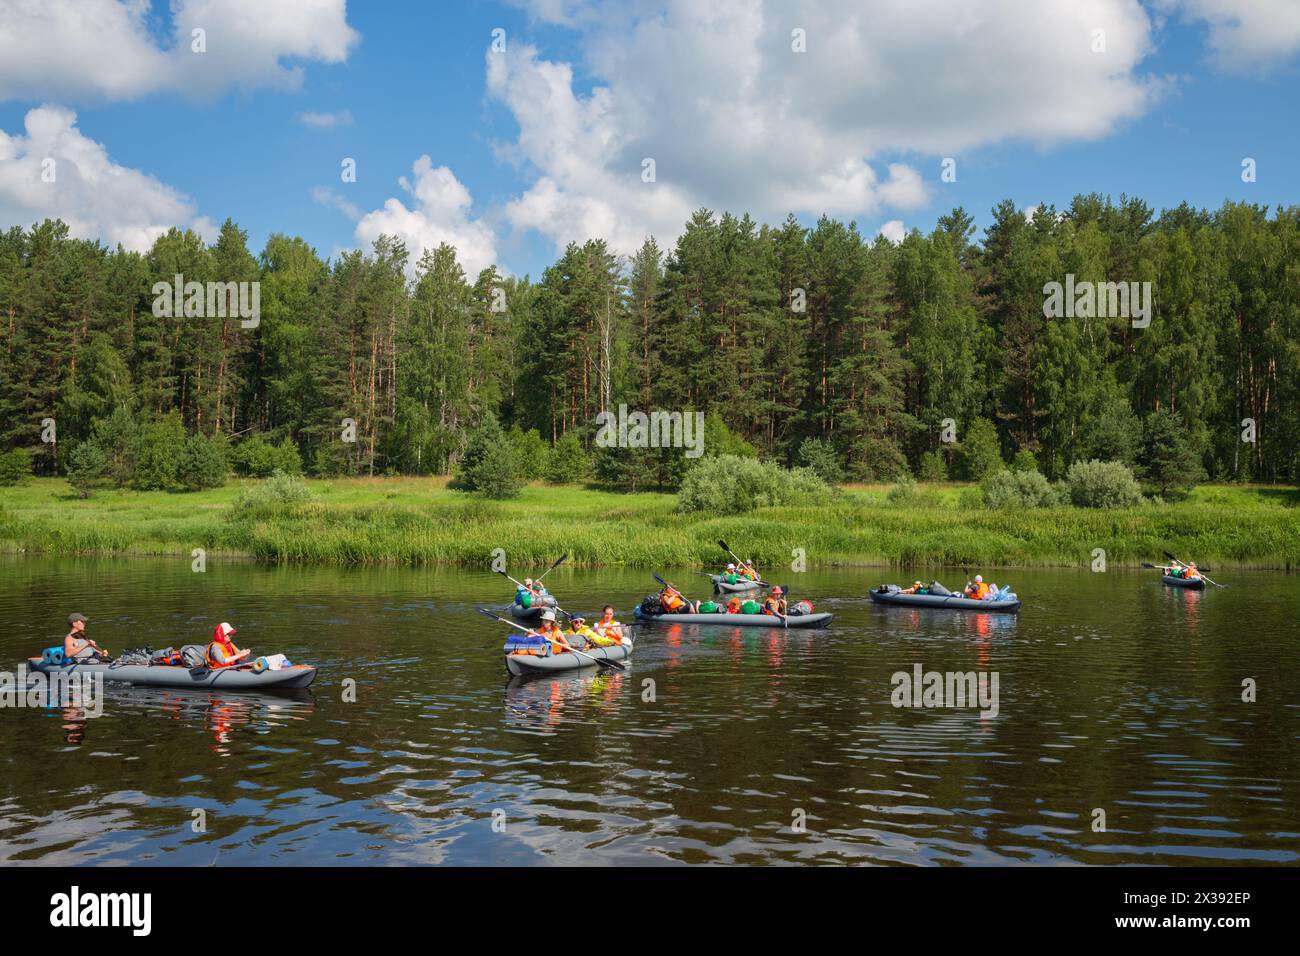 TVER REGION, RUSSLAND - 3. Juli 2016: Touristen auf Booten auf dem Fluss. Tvertsa - Fluss in der Region Tver in Russland. Länge: 188 km Der Fluss wird von Touristen genutzt Stockfoto